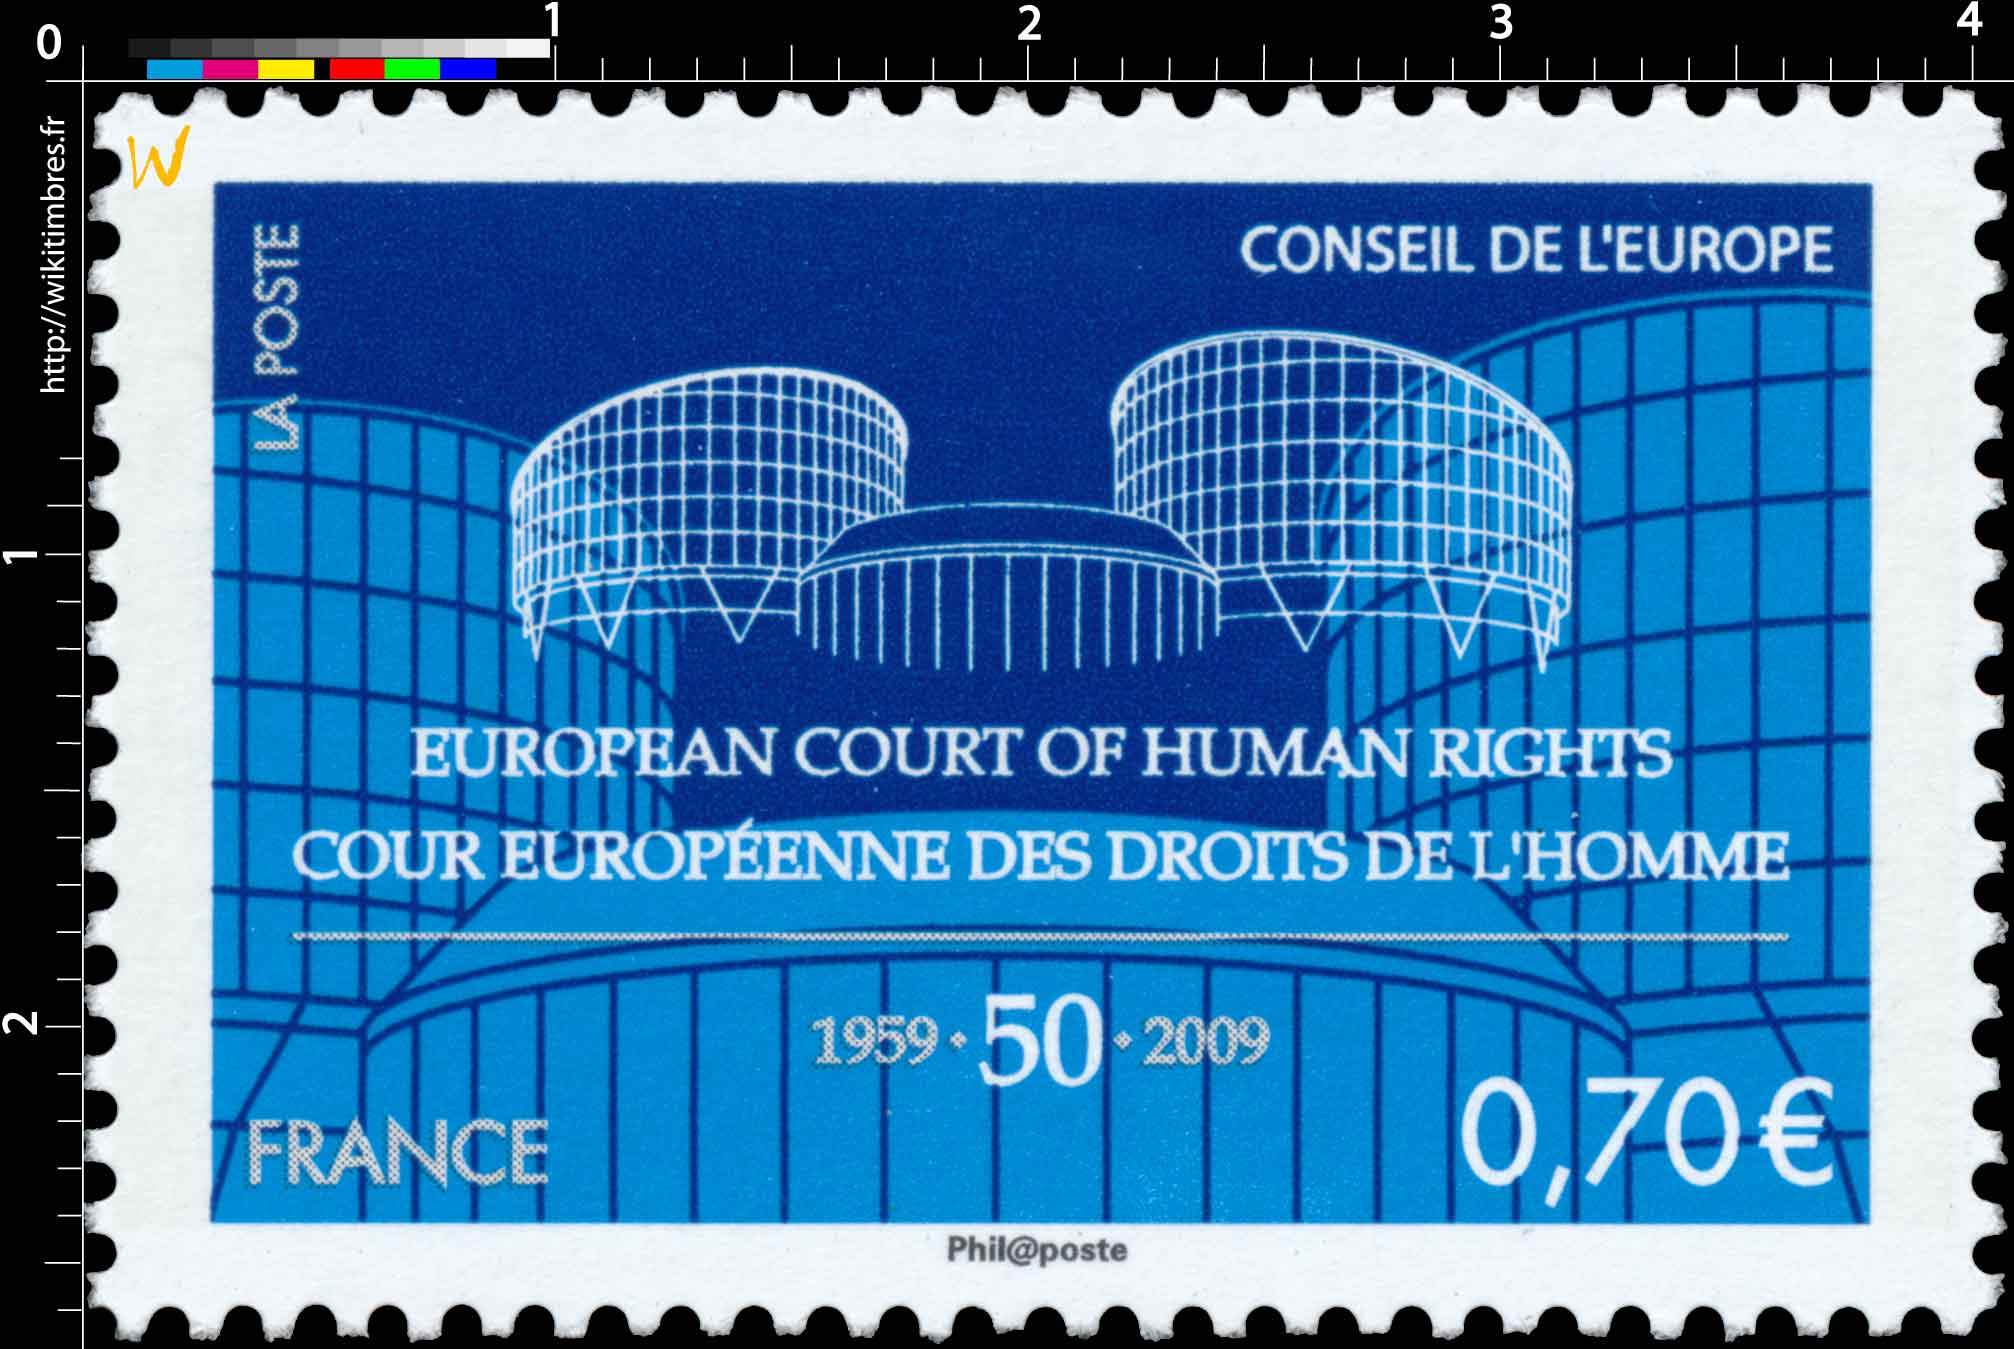 Conseil de l’Europe (European court of human rights) Cour européenne des droits de l’homme 1959-50-2009